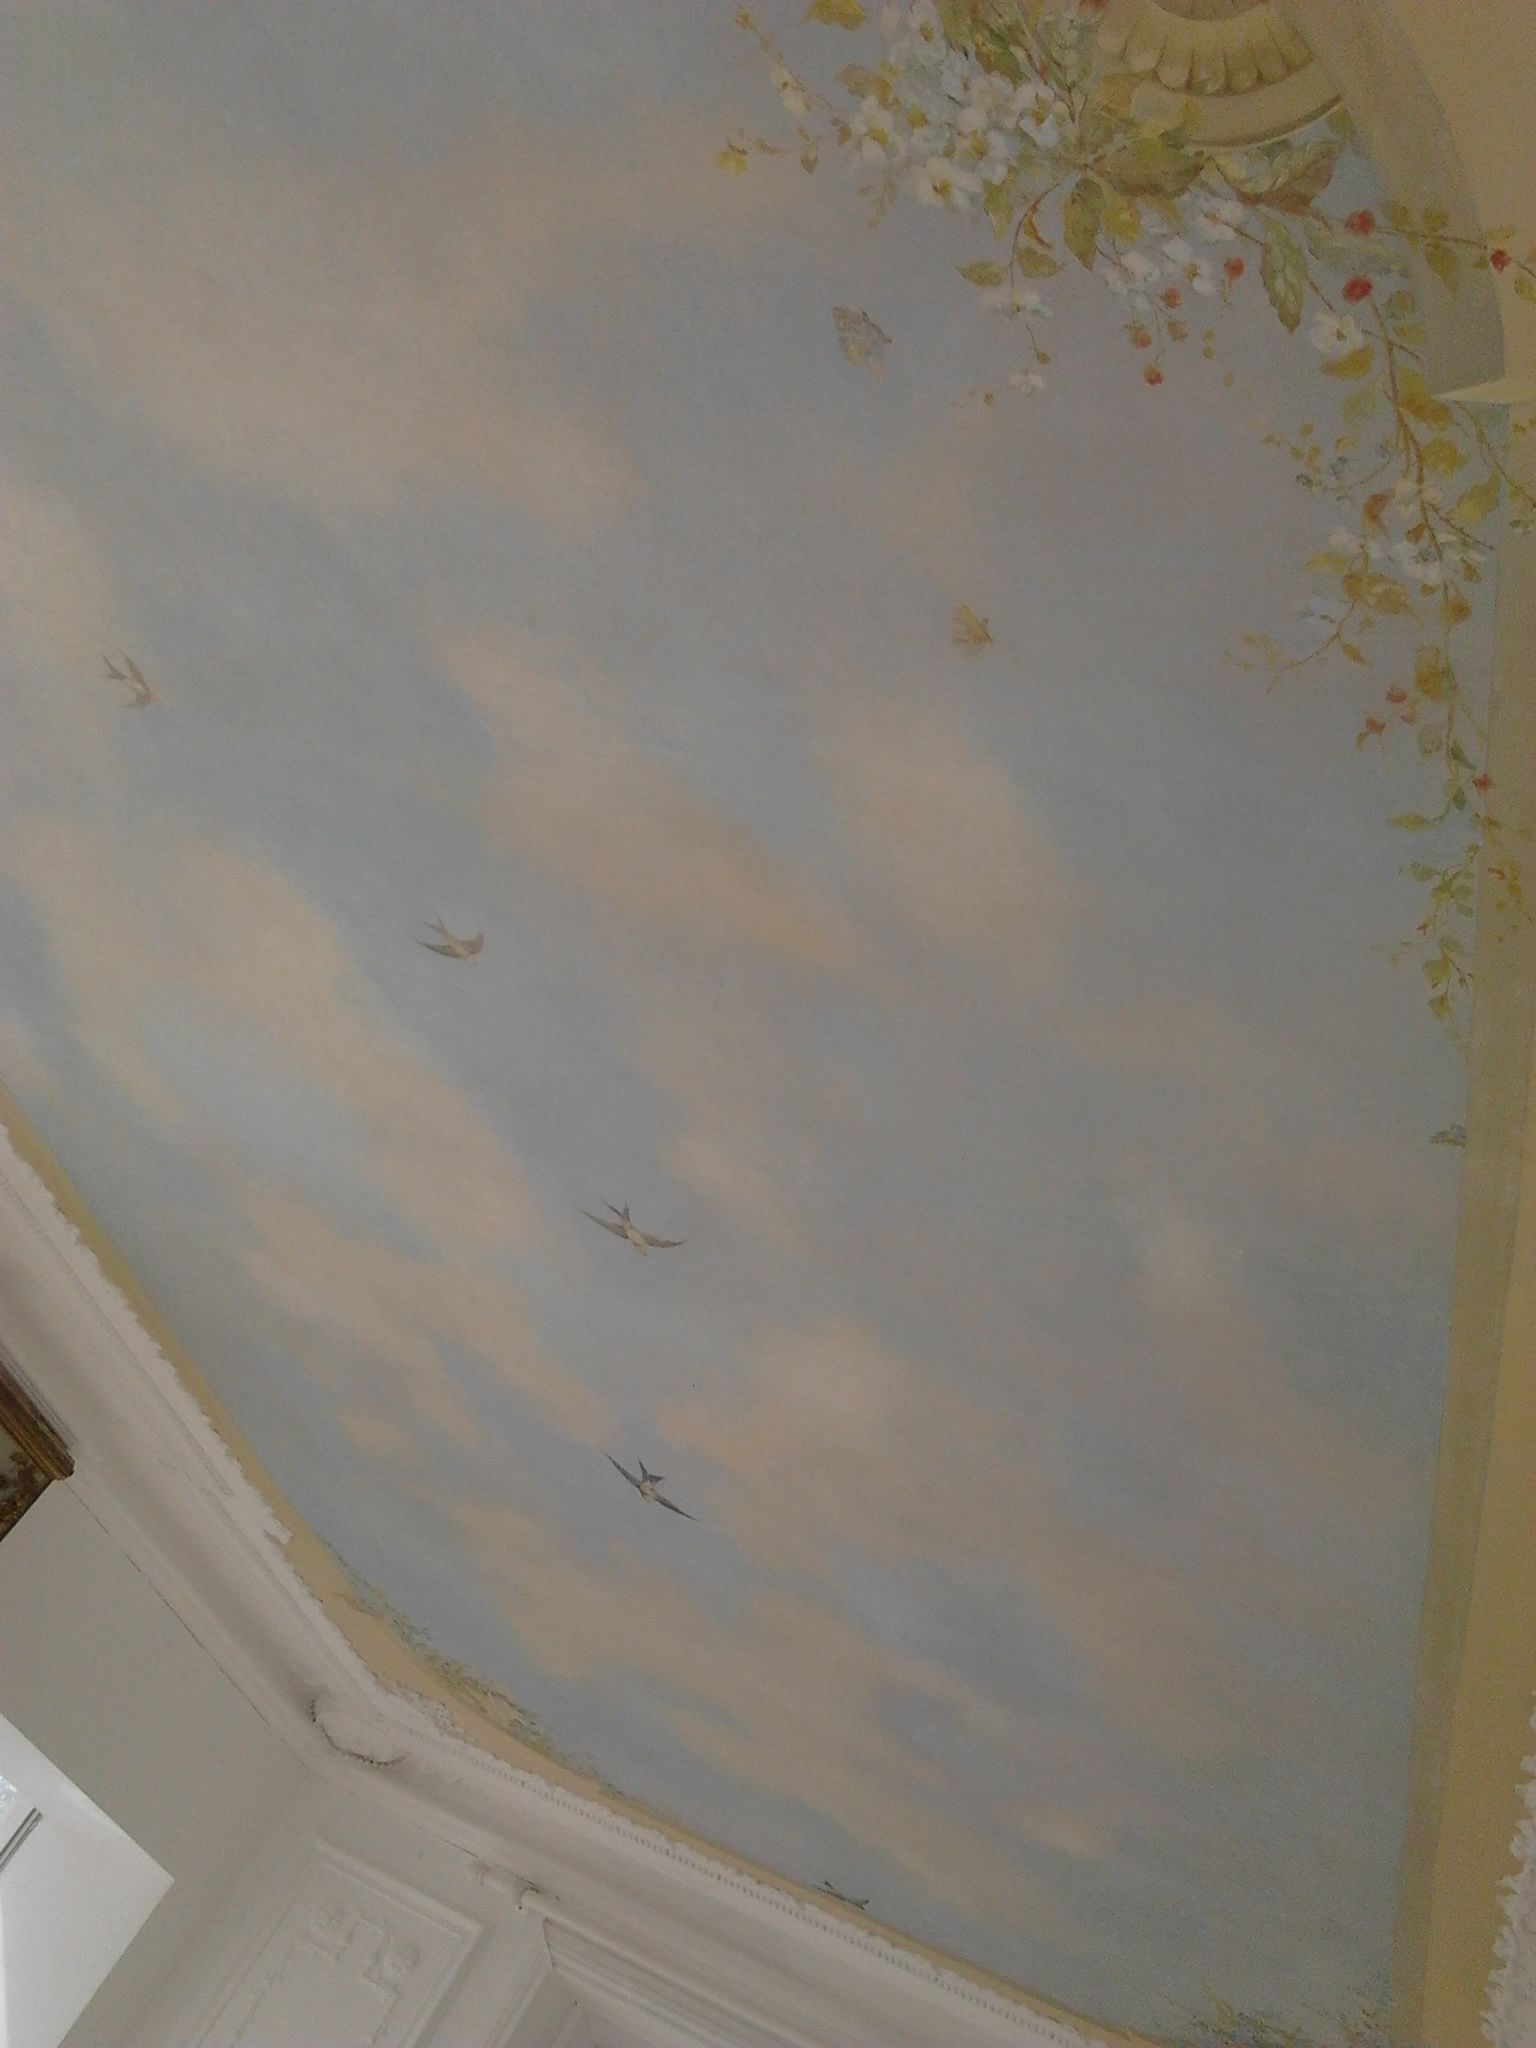 Rénovation d'un plafond peint au thème des quatres saisons période 19me sc.Particulier Neuilly Plaisance (93)